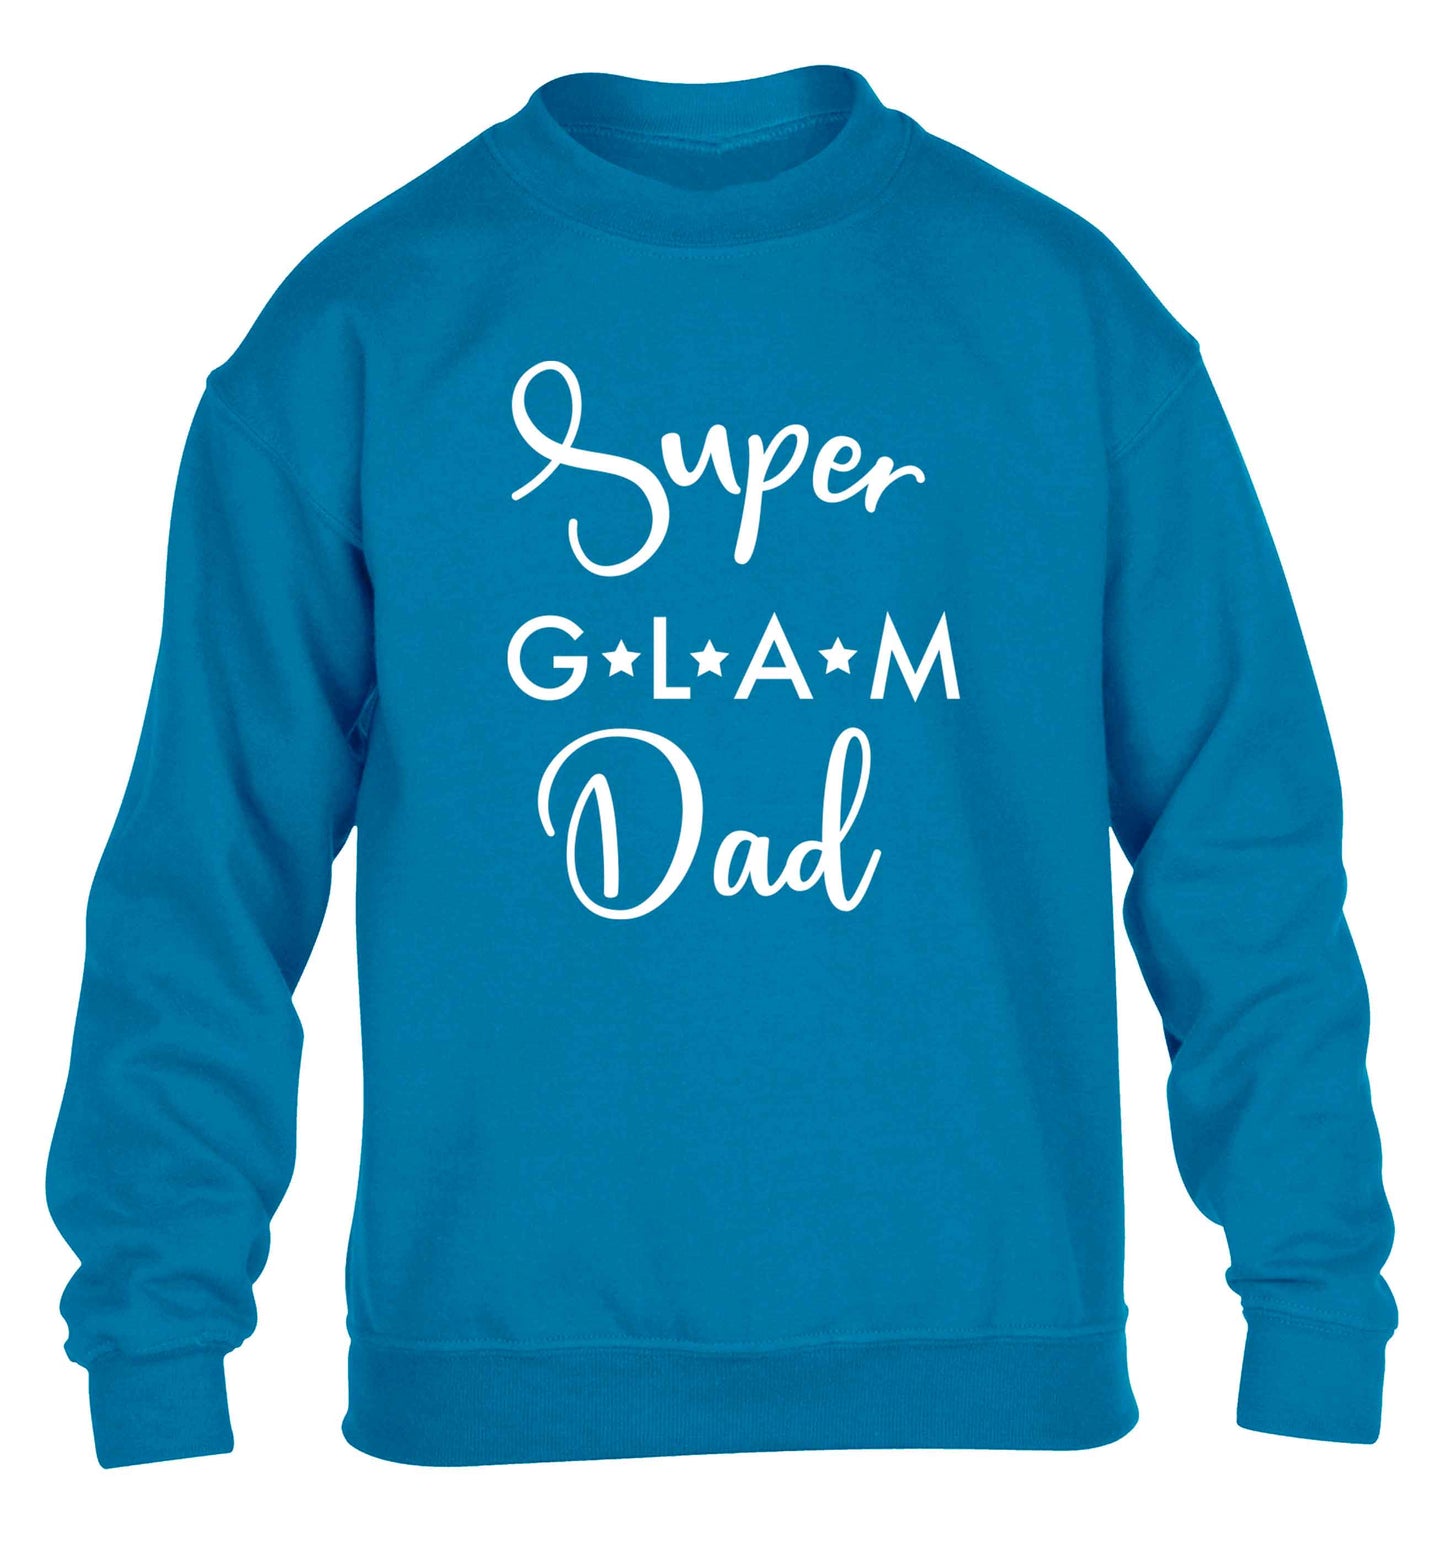 Super glam Dad children's blue sweater 12-13 Years